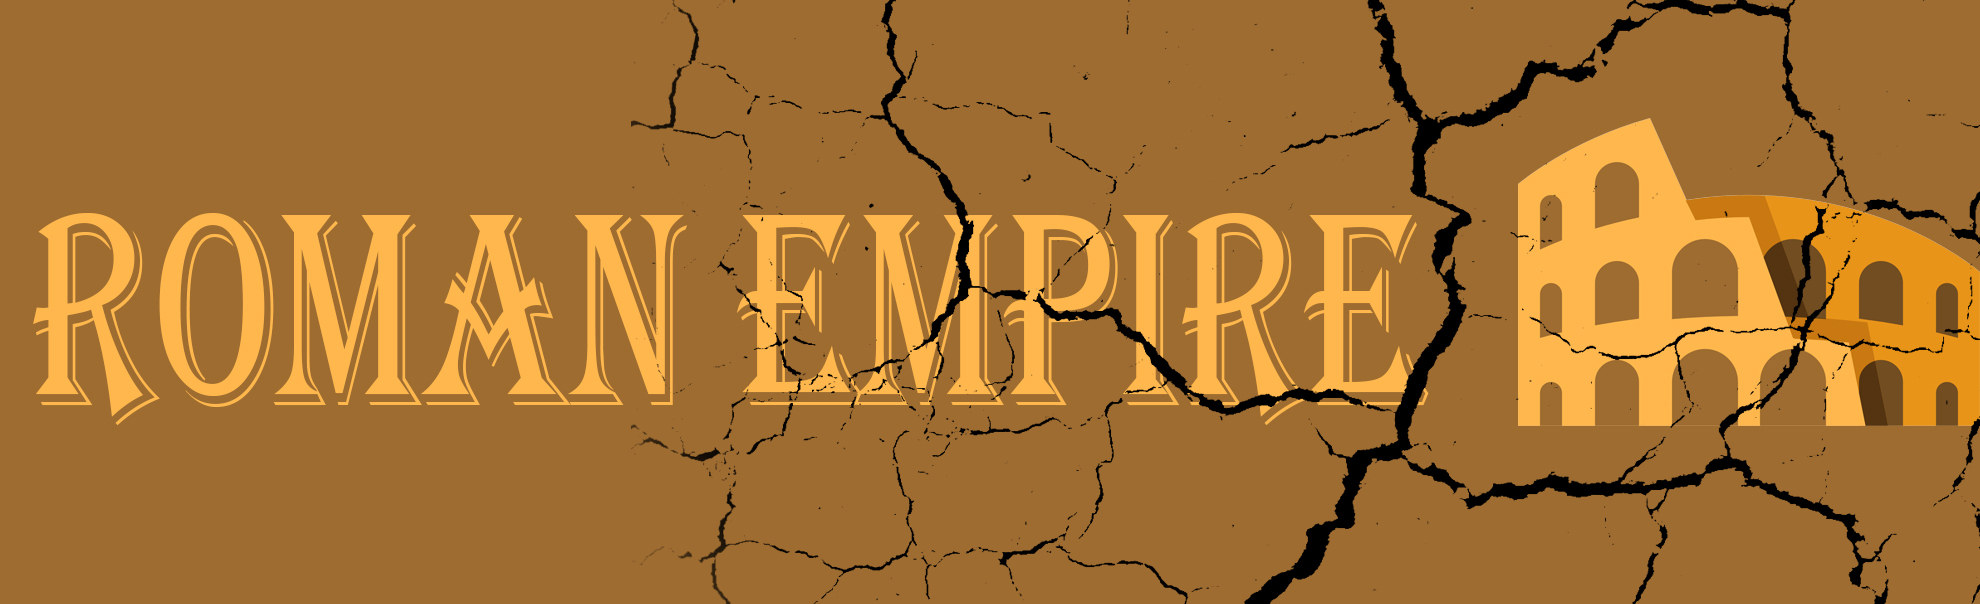 Римская империя: кризис